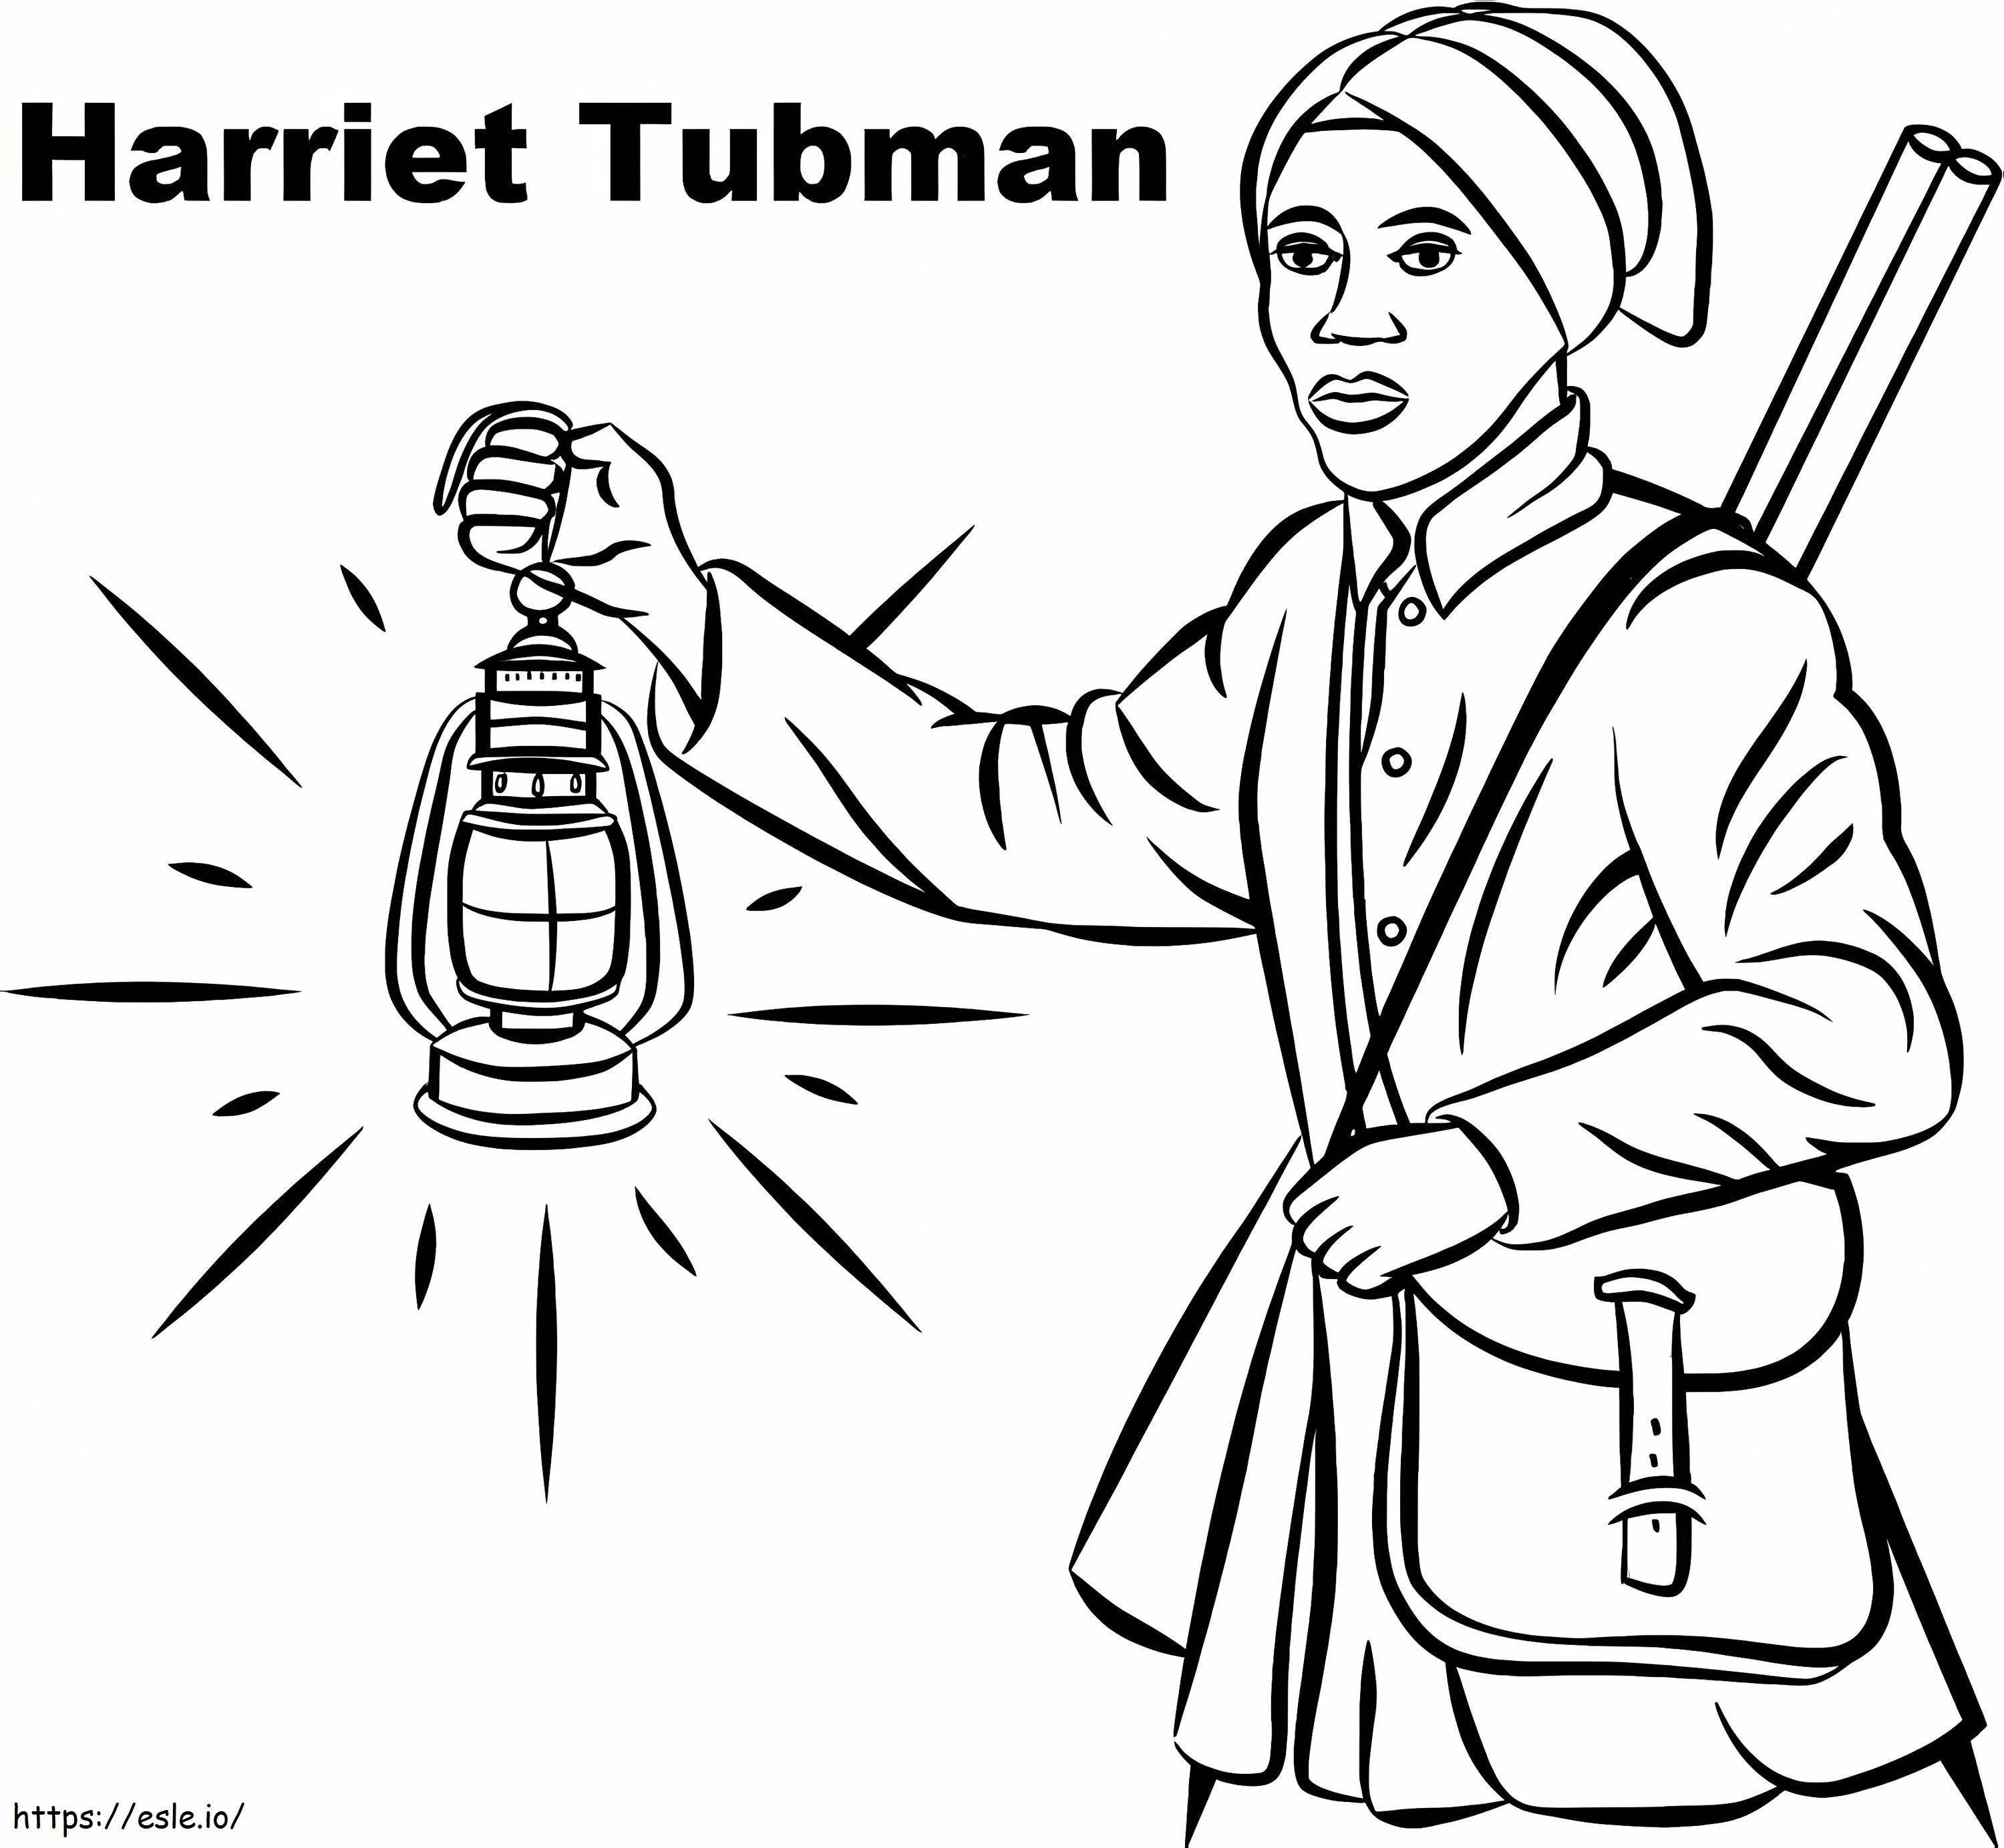 Harriet Tubman'ın 6 boyama